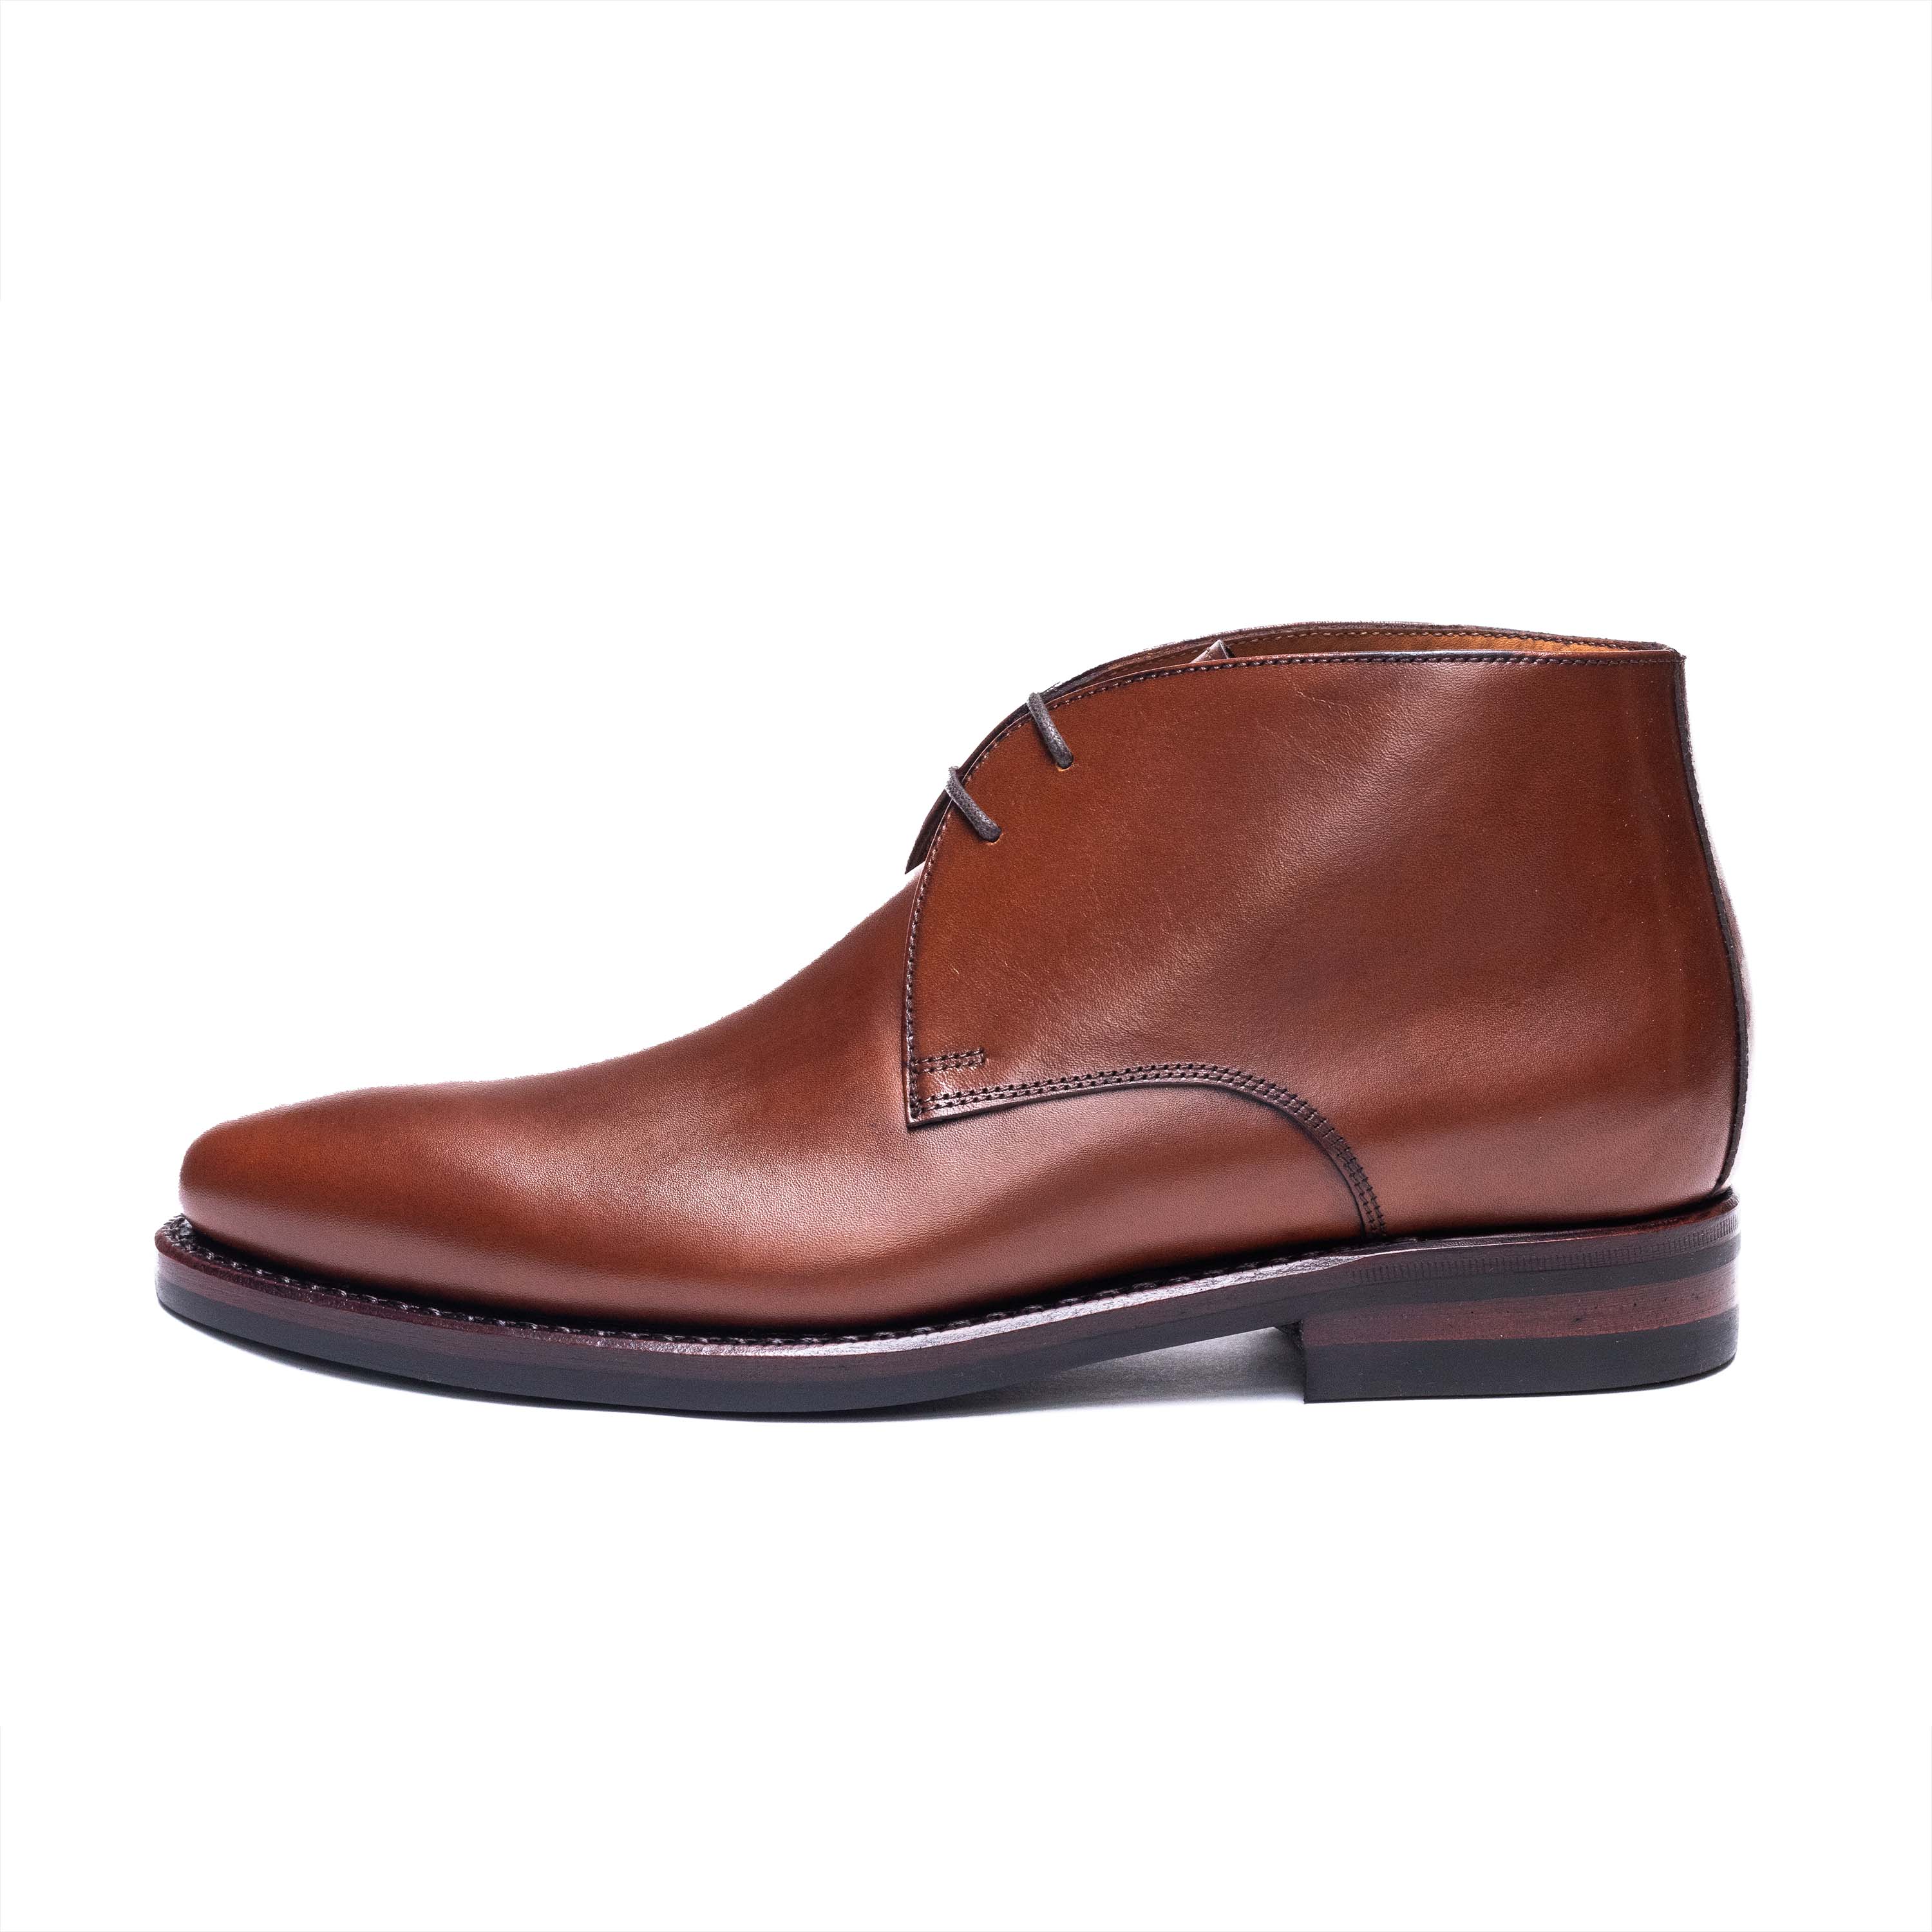 Men's Chukka Boots / Cuoio Calf 98322